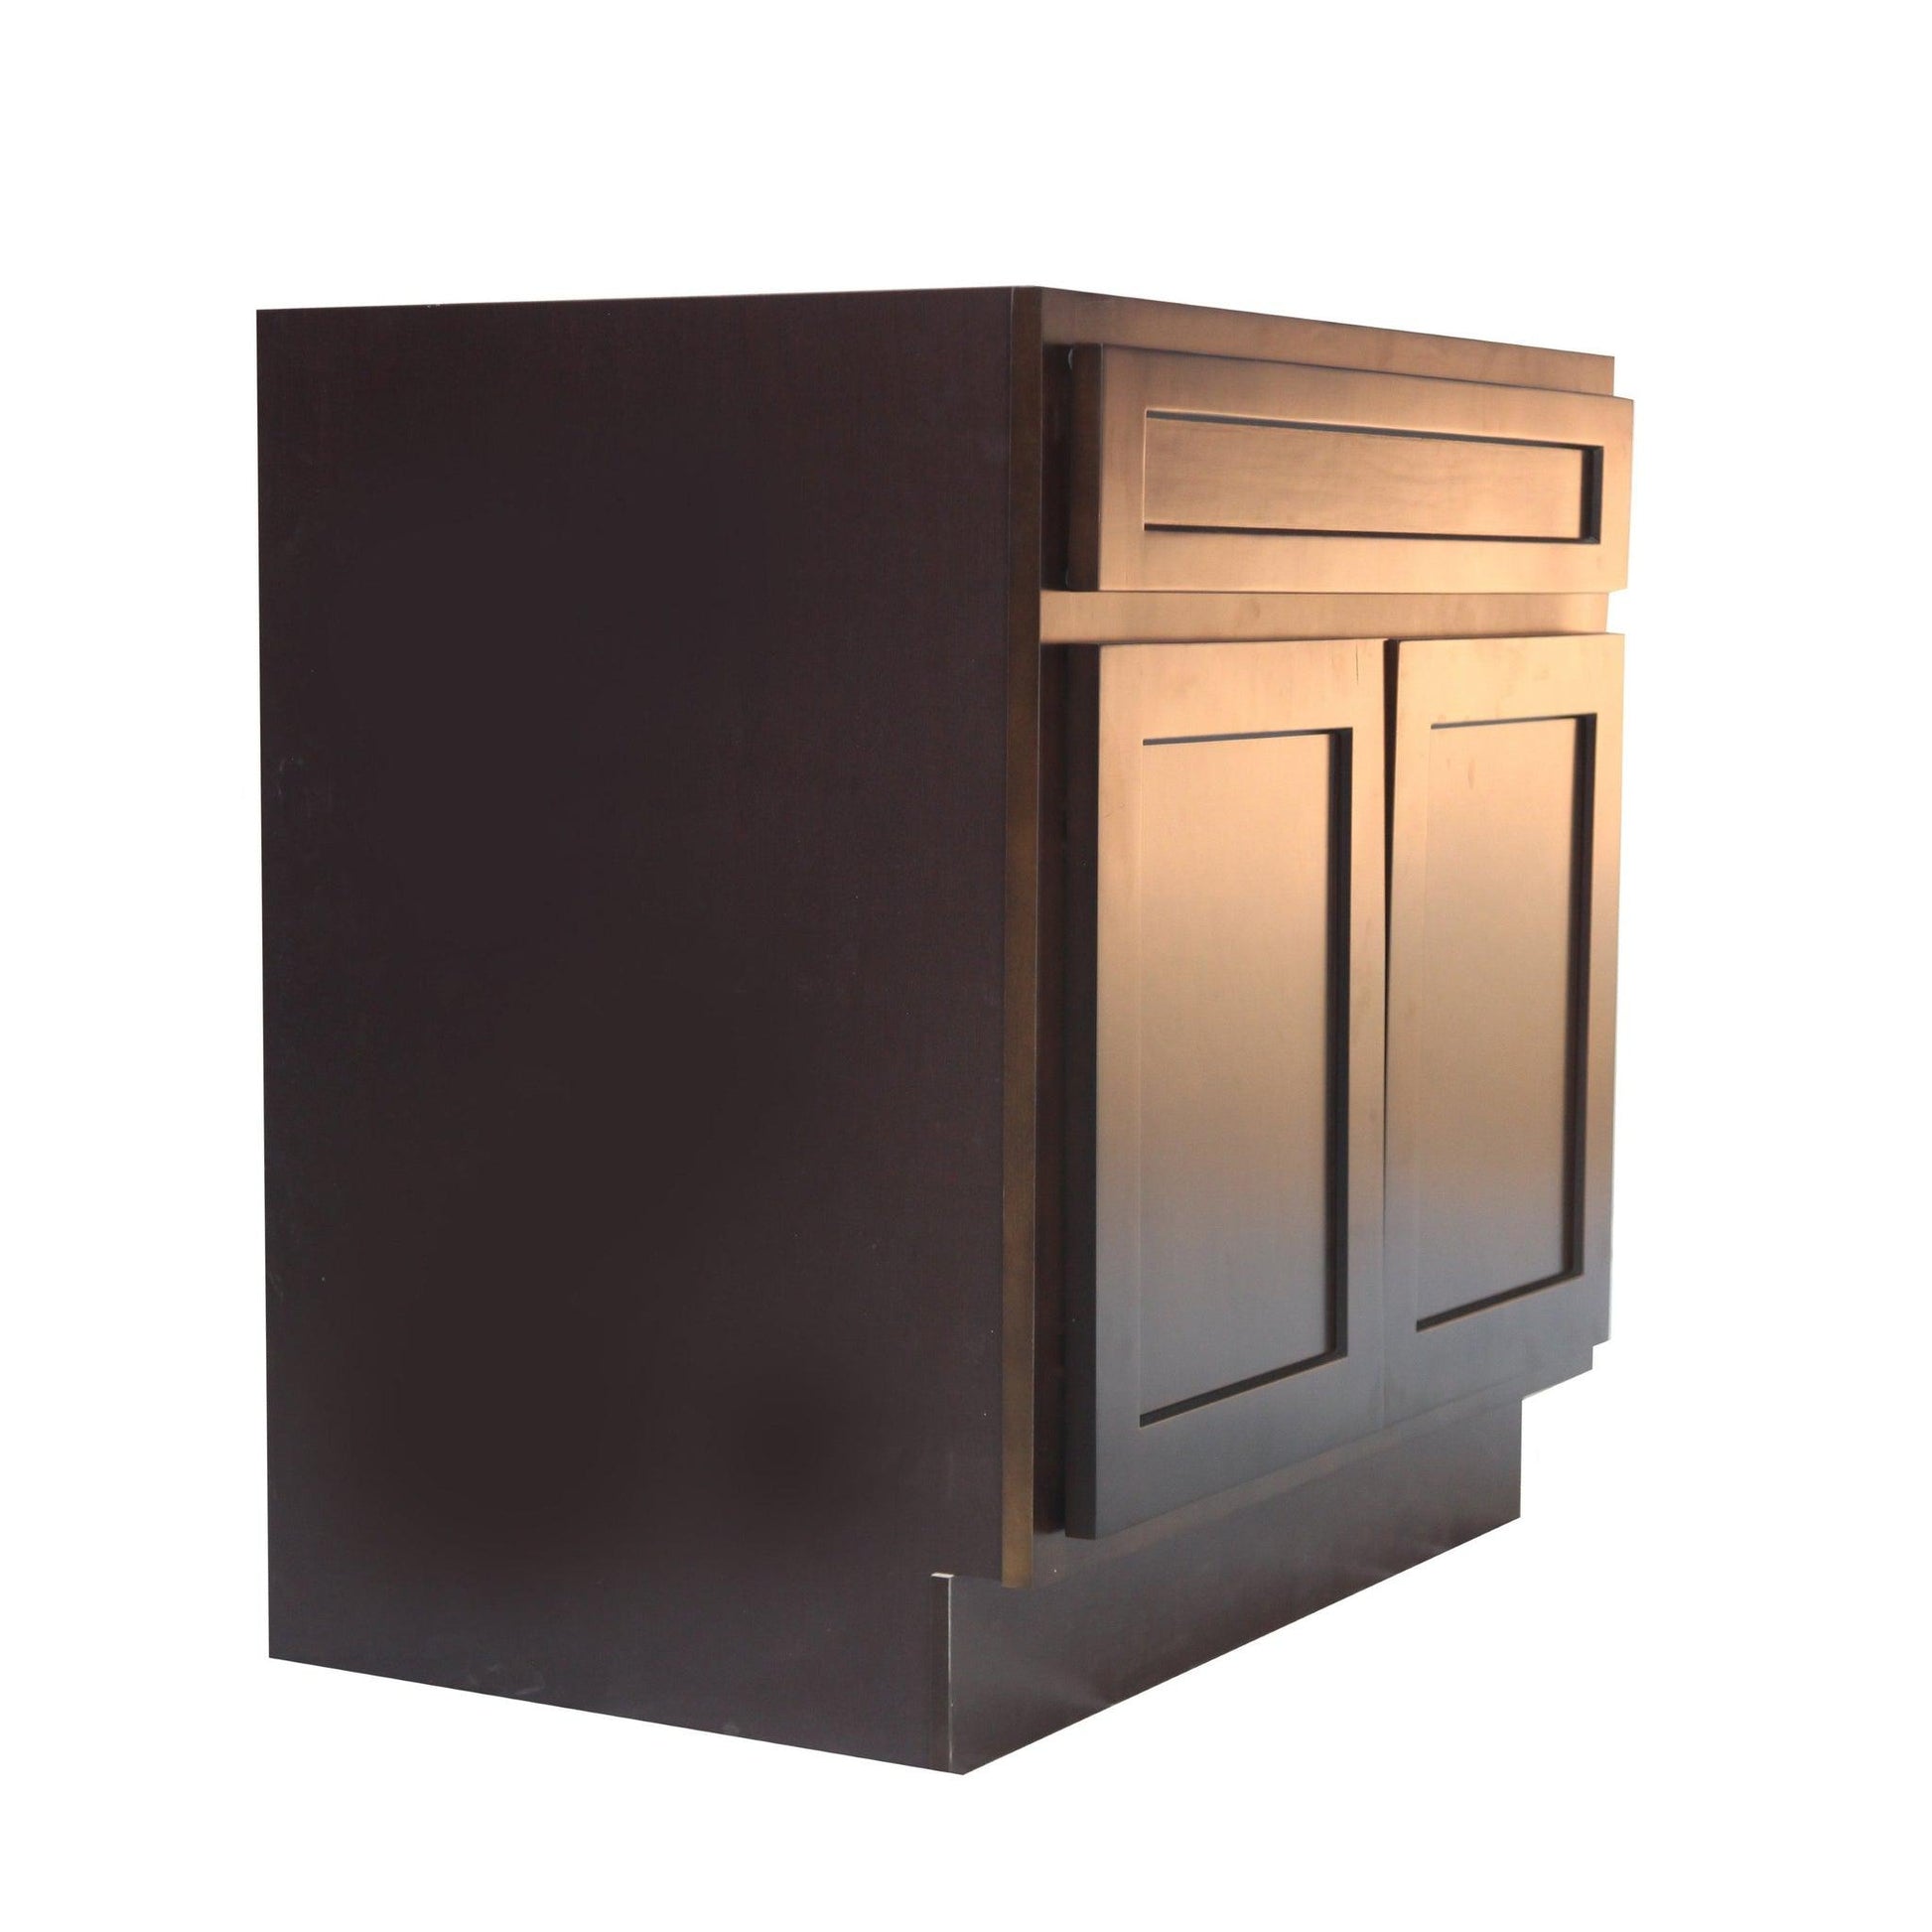 Vanity Art 39" Brown Freestanding Solid Wood Vanity Cabinet With Double Soft Closing Doors